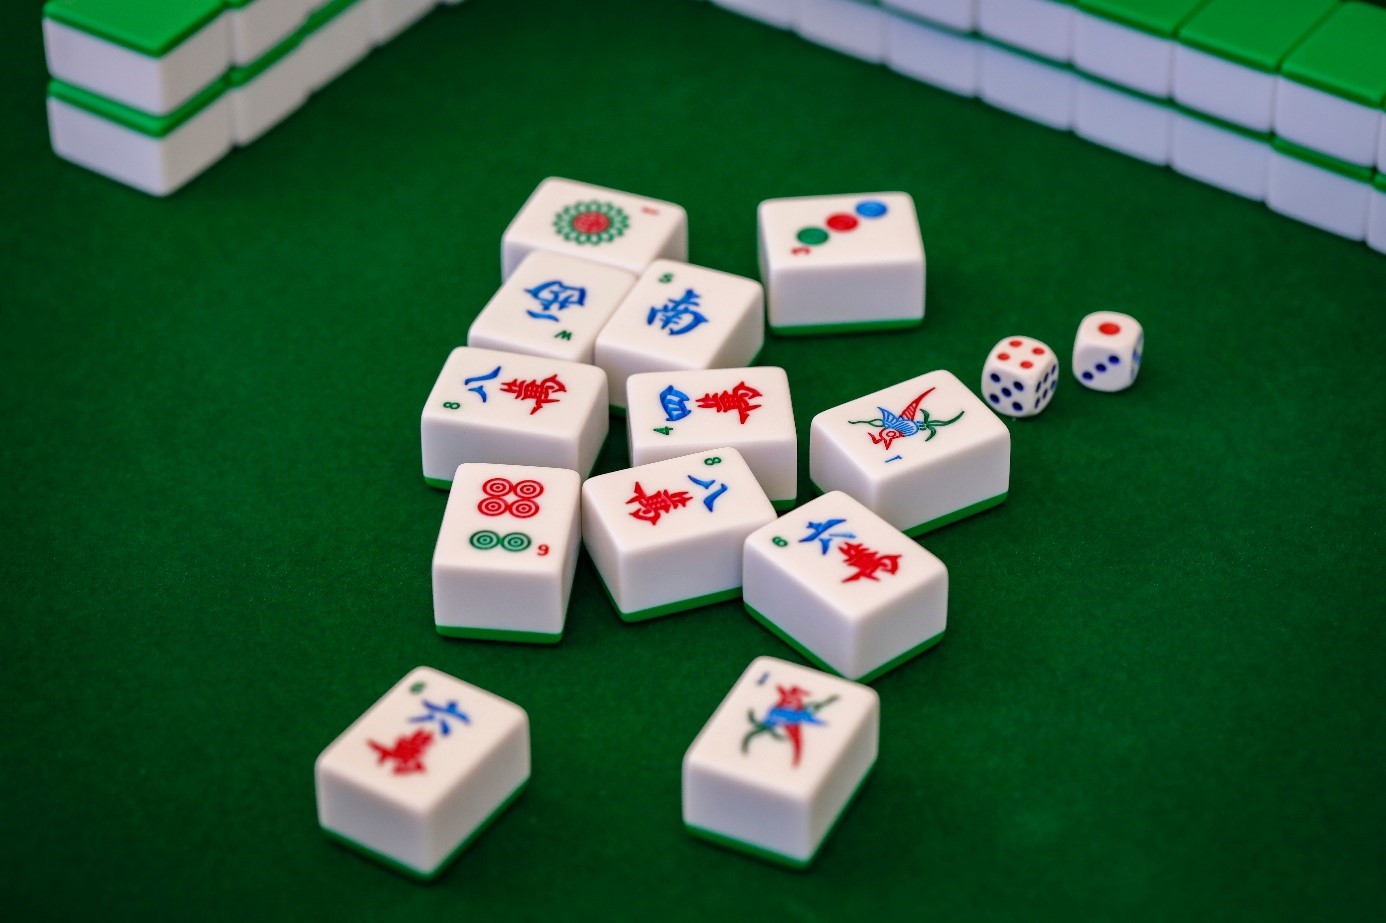 Solitarios chinos mahjong